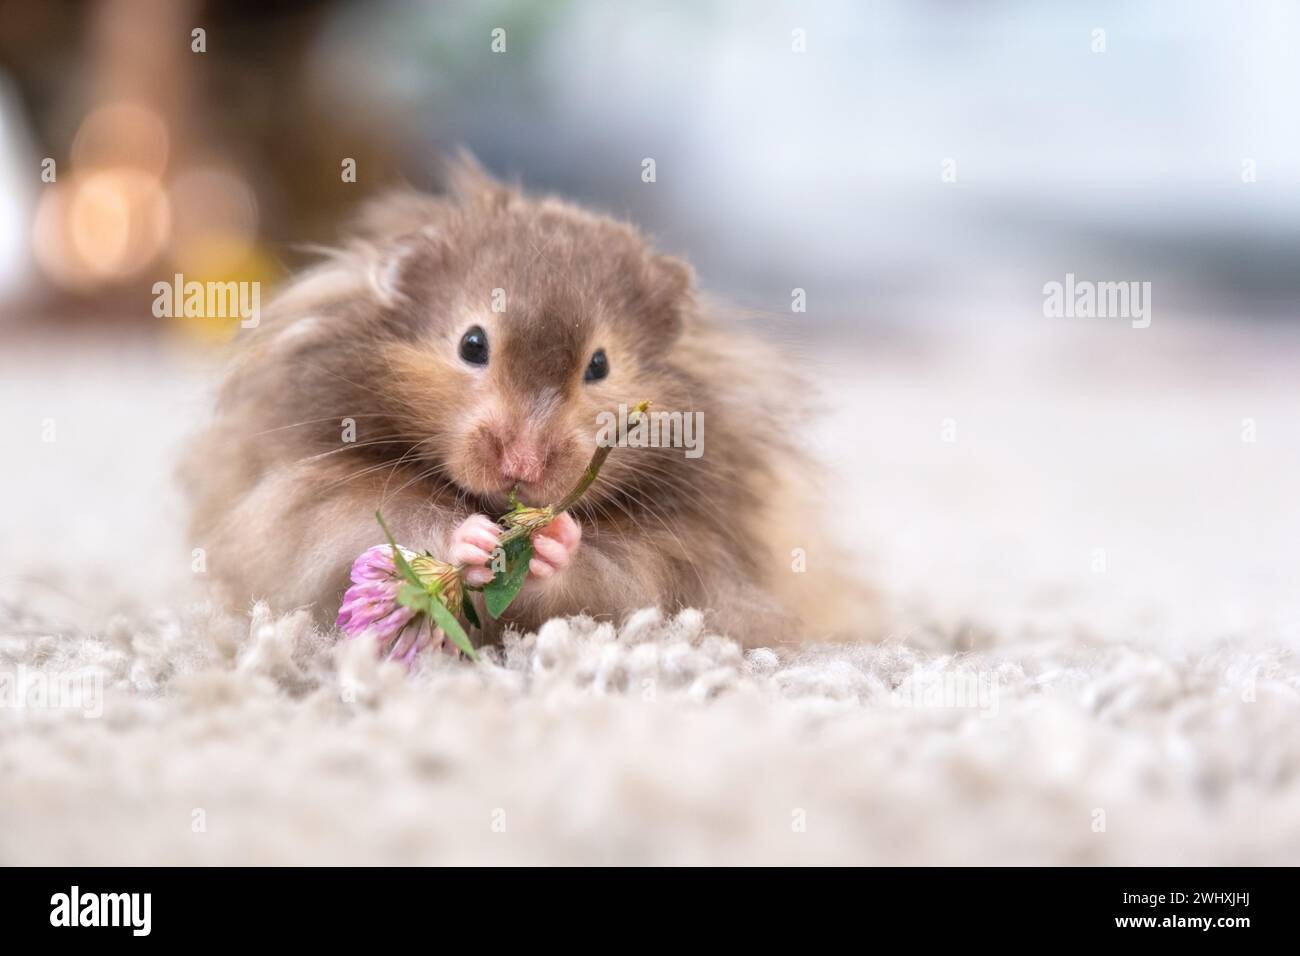 Lustiger, flauschiger syrischer Hamster isst einen grünen Kleeblatt, stopft seine Wangen. Futter für ein Nagetier, Vitamine. Nahaufnahme Stockfoto